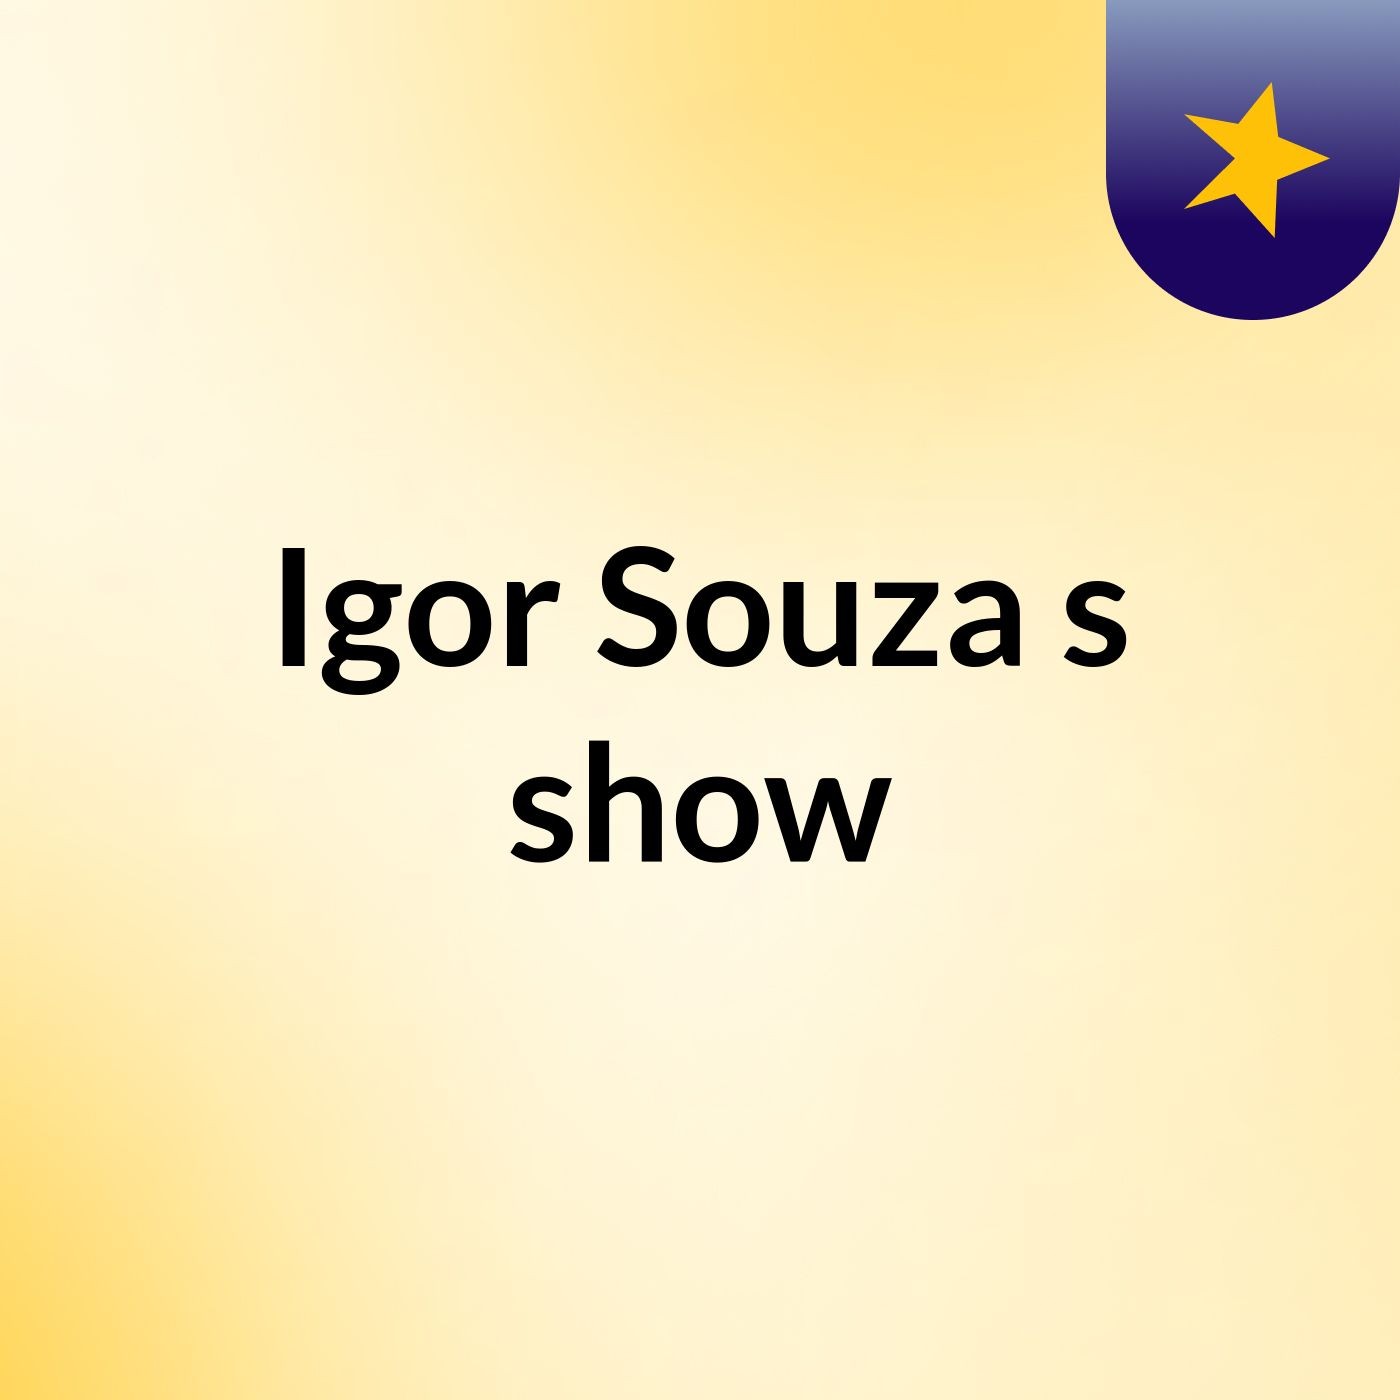 Igor Souza's show